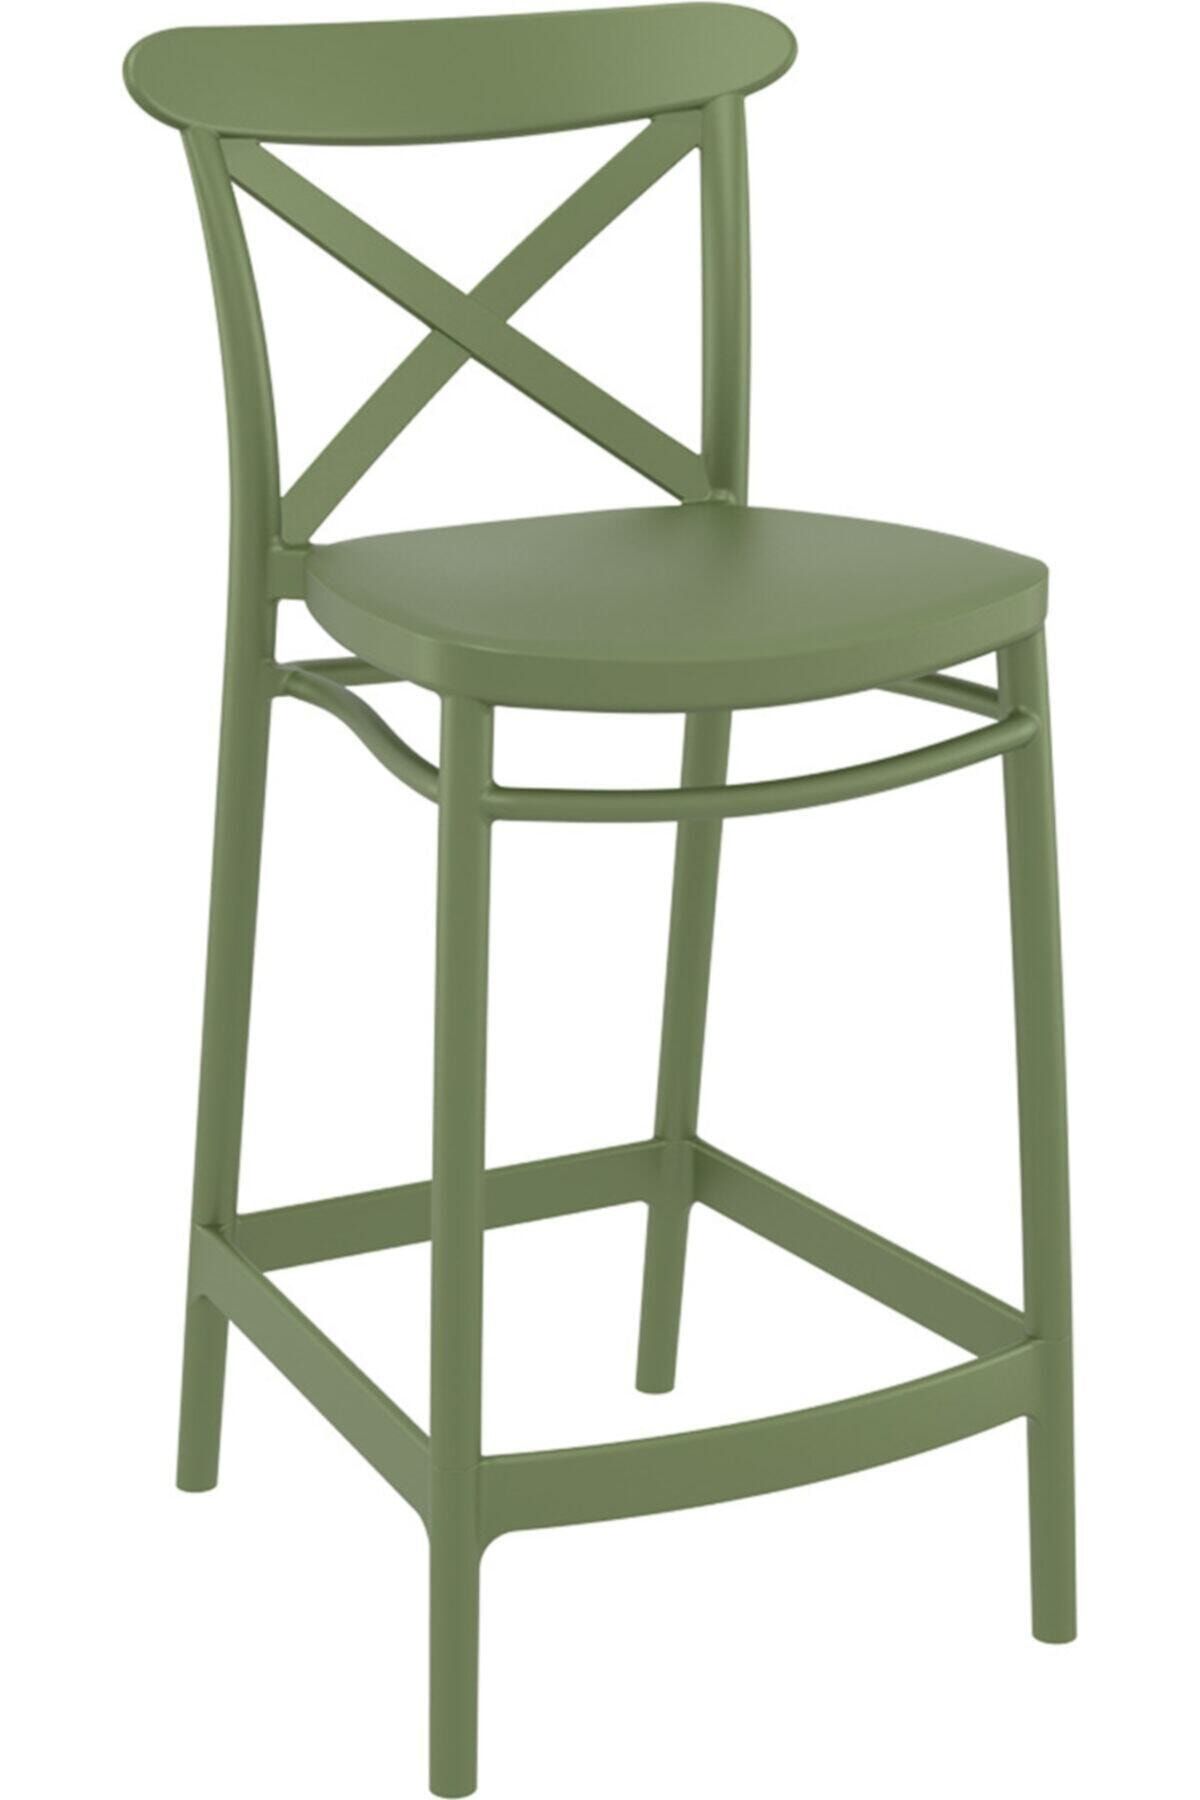 Siesta Cross Bar Sandalyesi 65cm Zeytin Yeşili